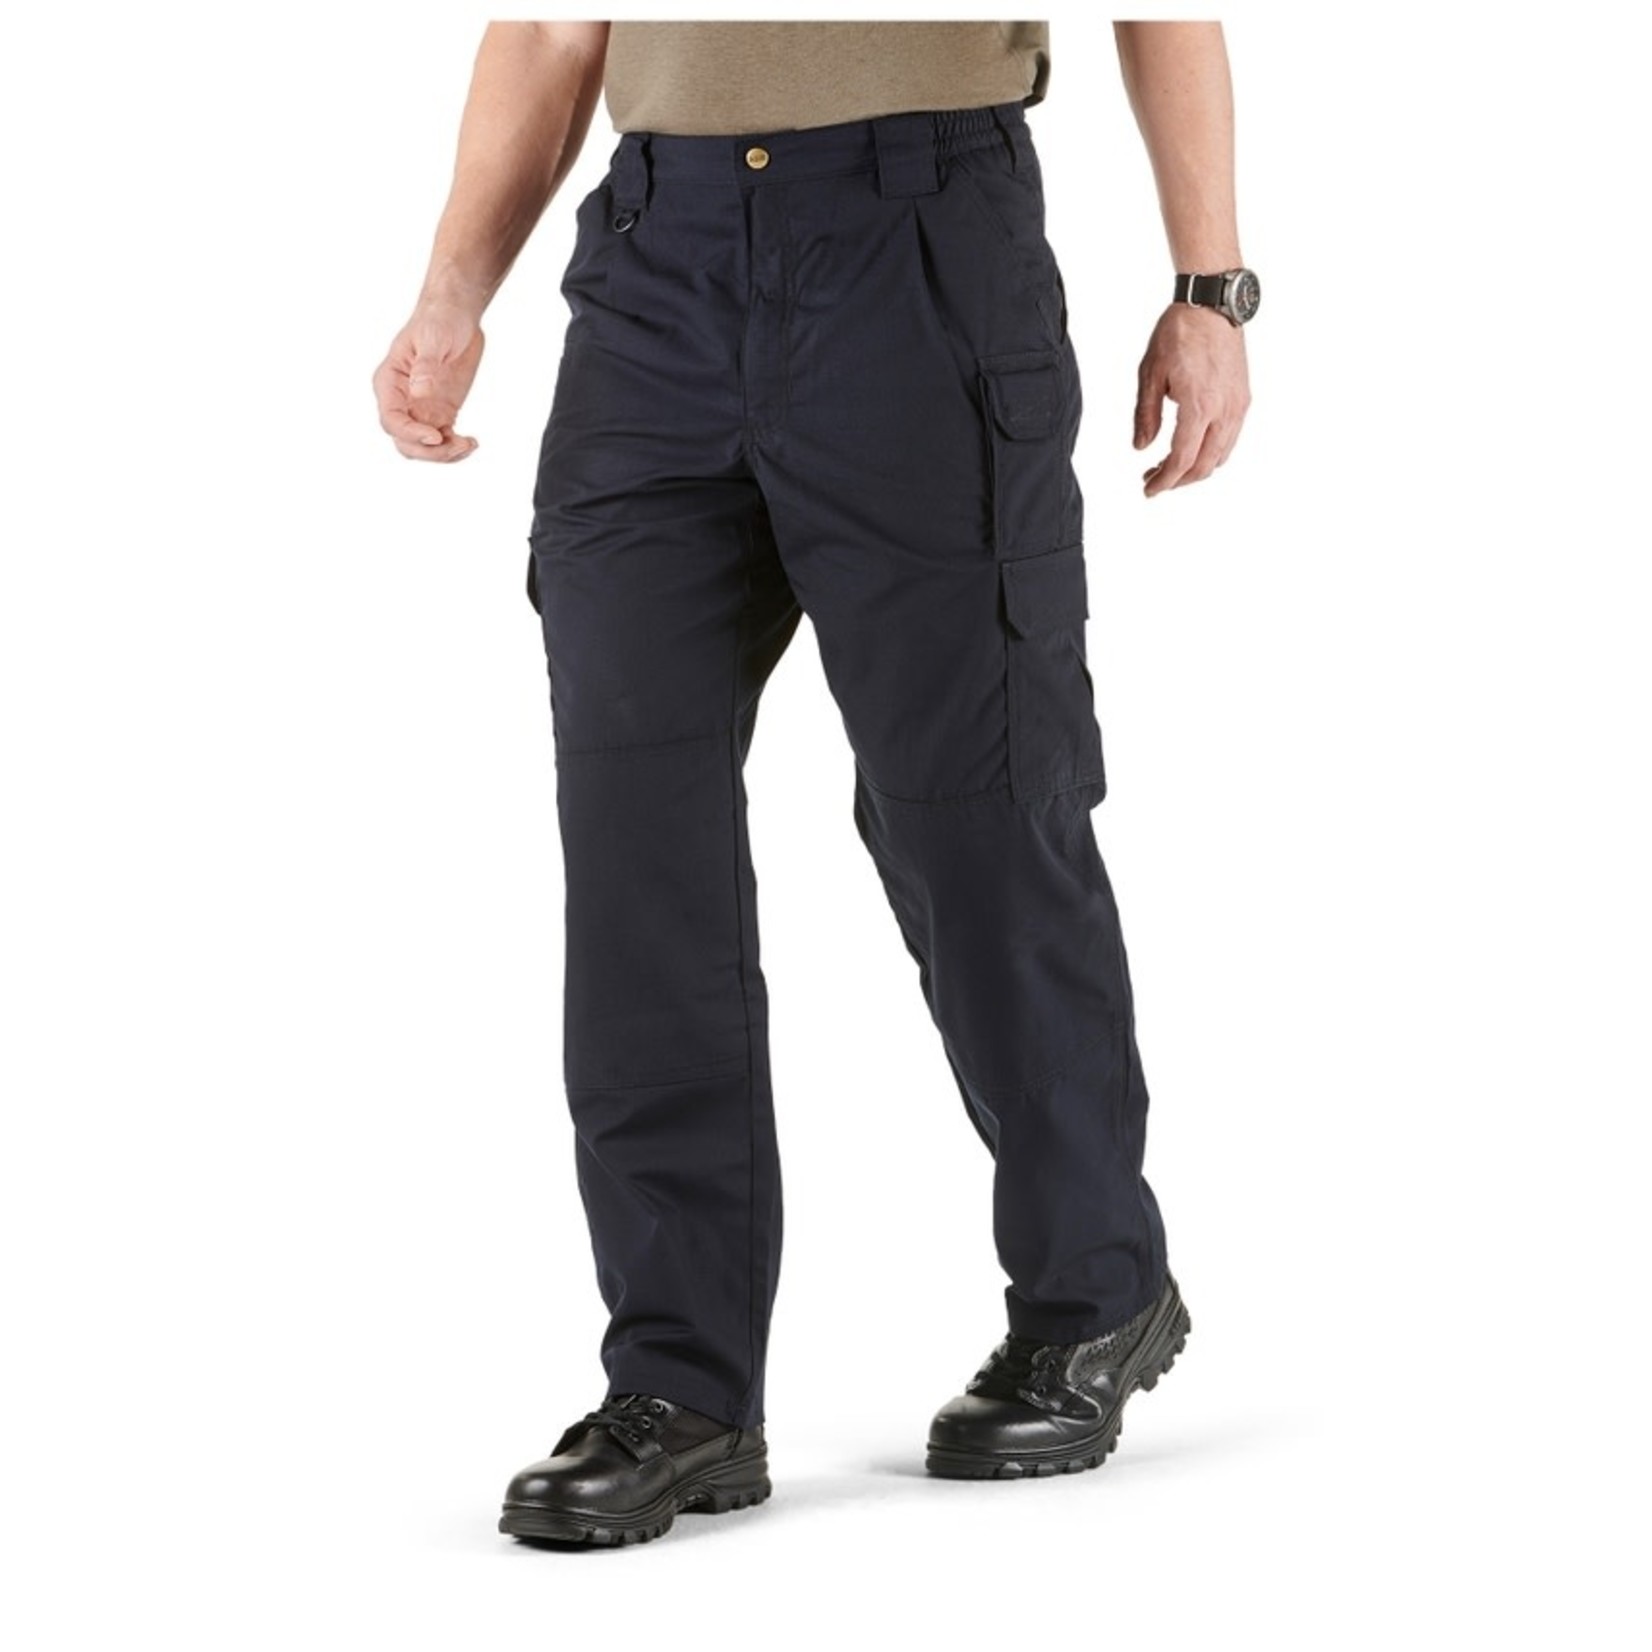 5.11 Tactical 5.11 Men's Taclite Pro Pants